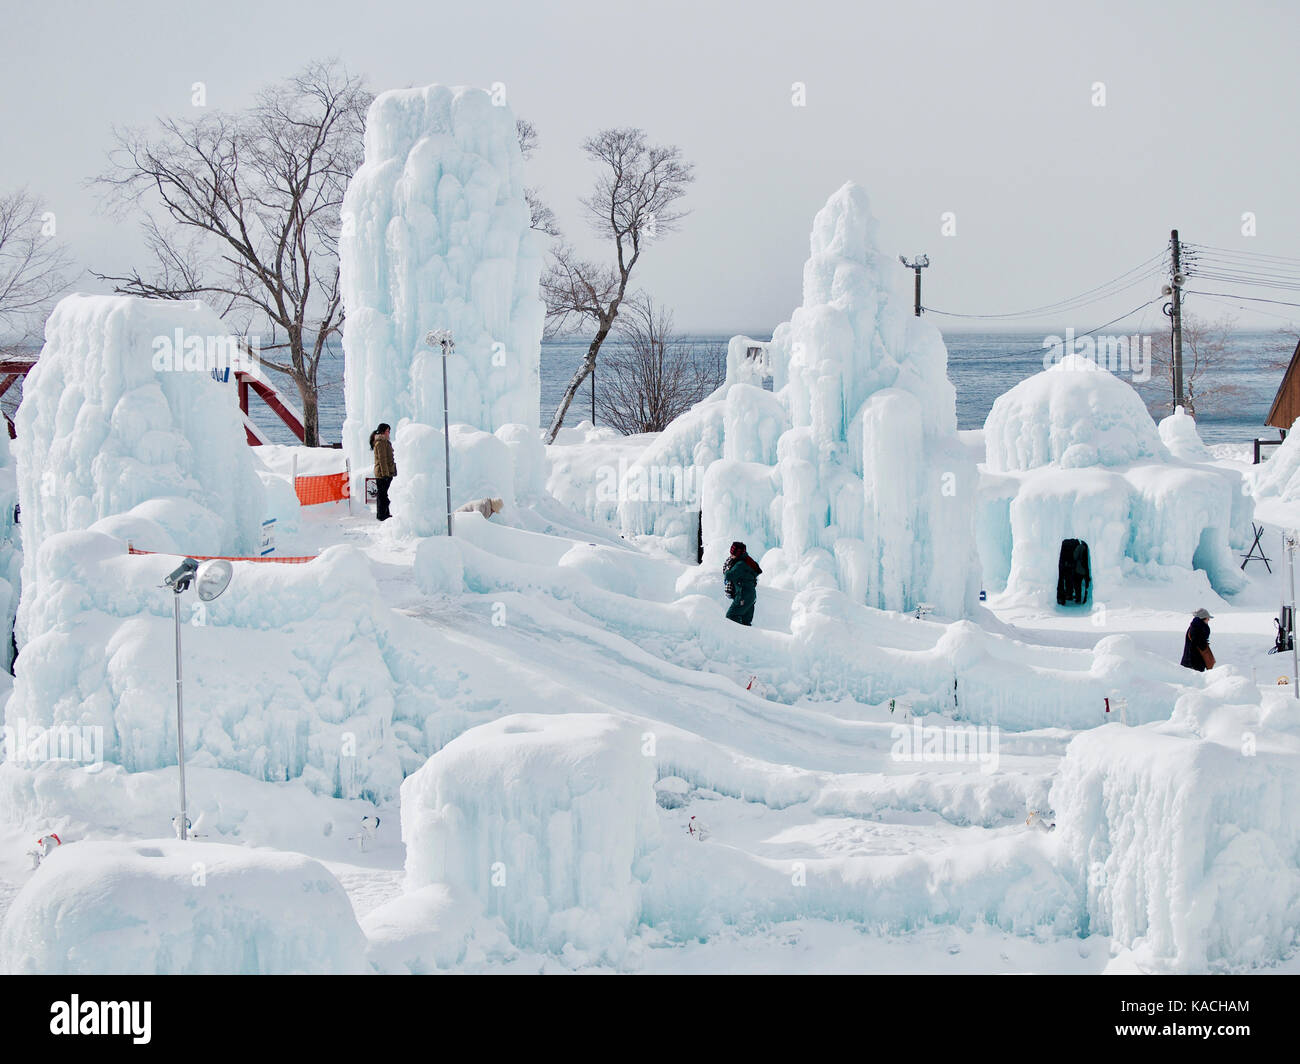 Festival de glace en hiver au lac shikotsu, Hokkaido, Japon Banque D'Images